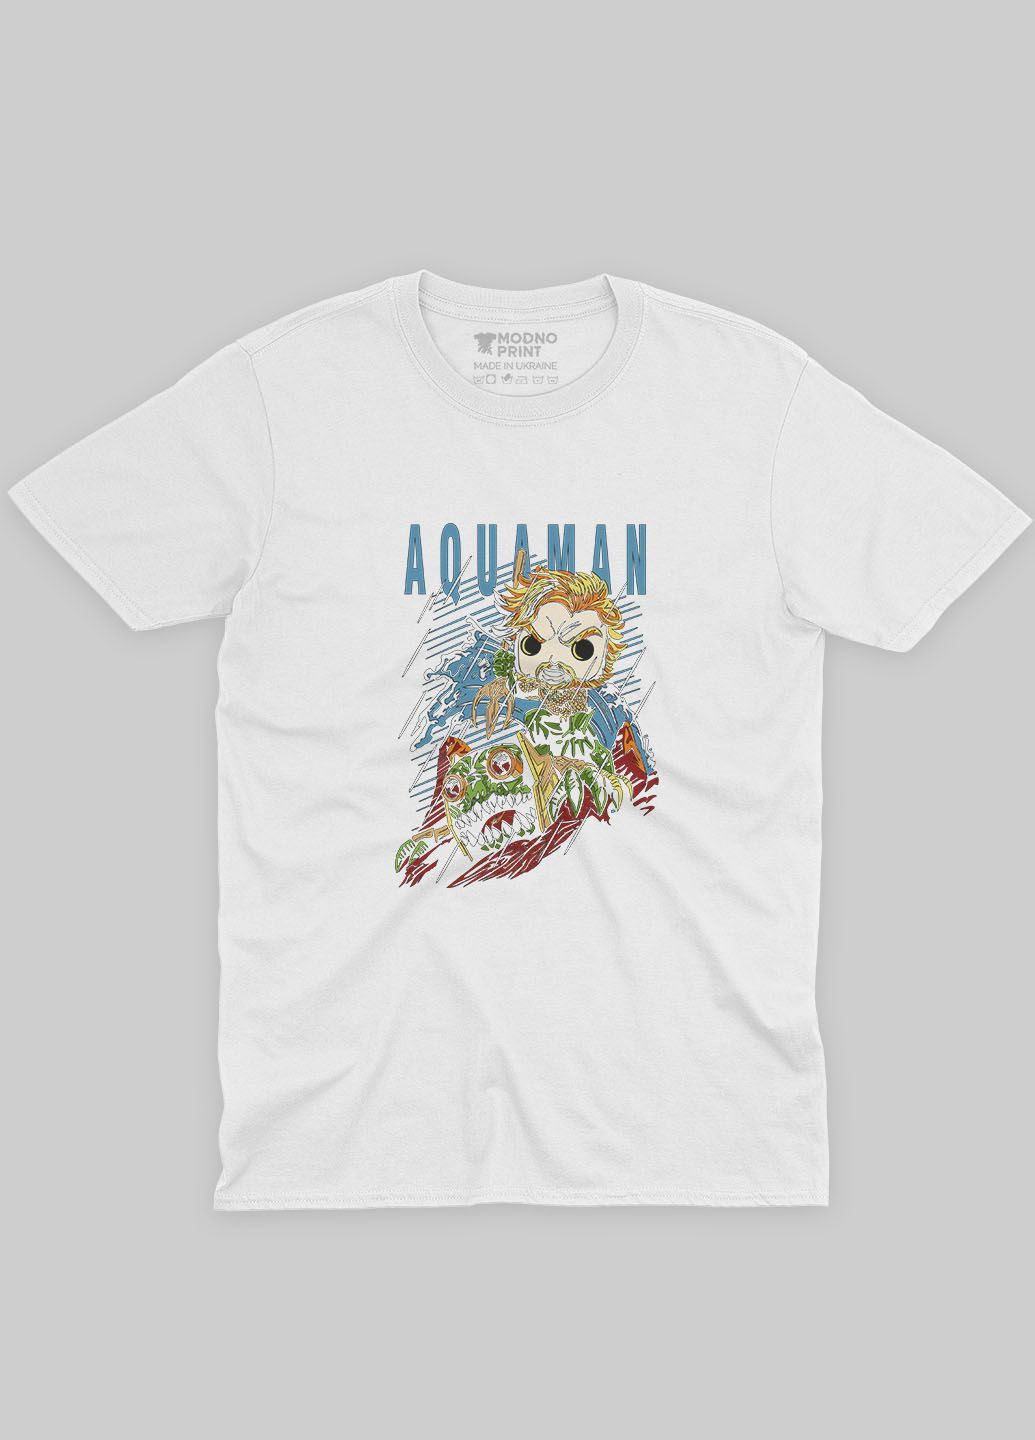 Біла демісезонна футболка для дівчинки з принтом супергероя - аквамен (ts001-1-whi-006-001-001-g) Modno